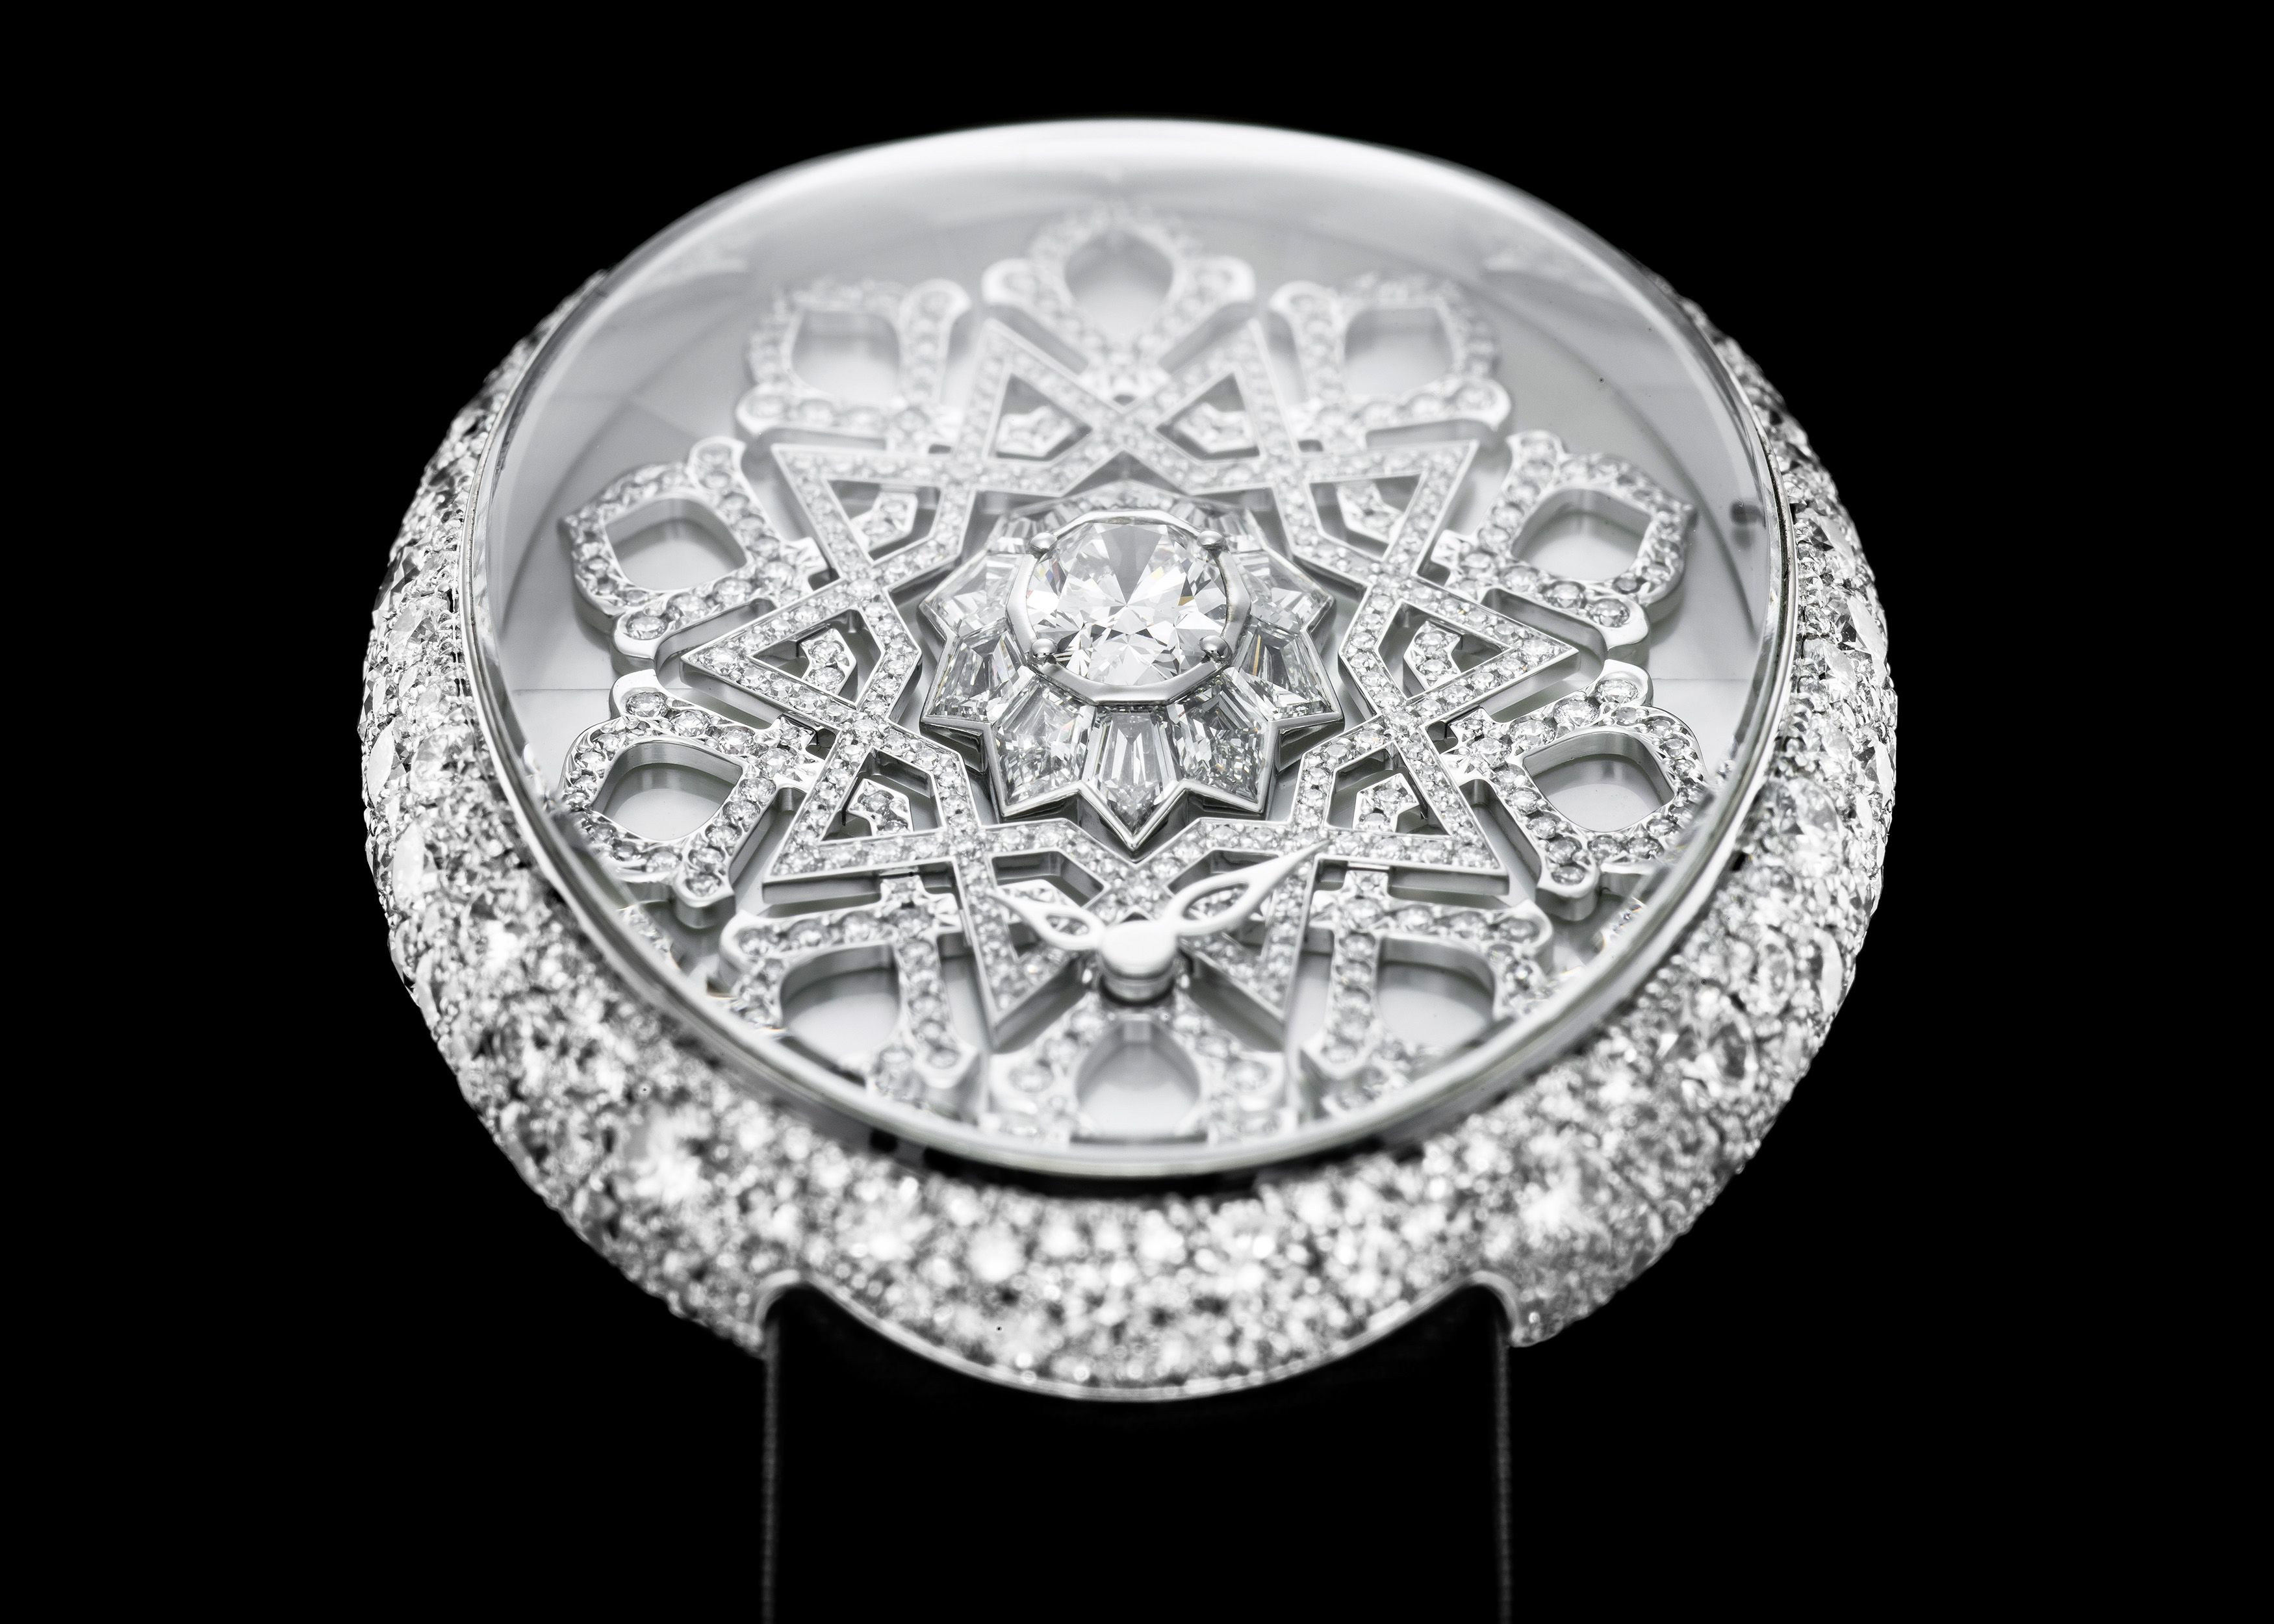 Van 'T Hoff Diamond Arabesque Art Watch